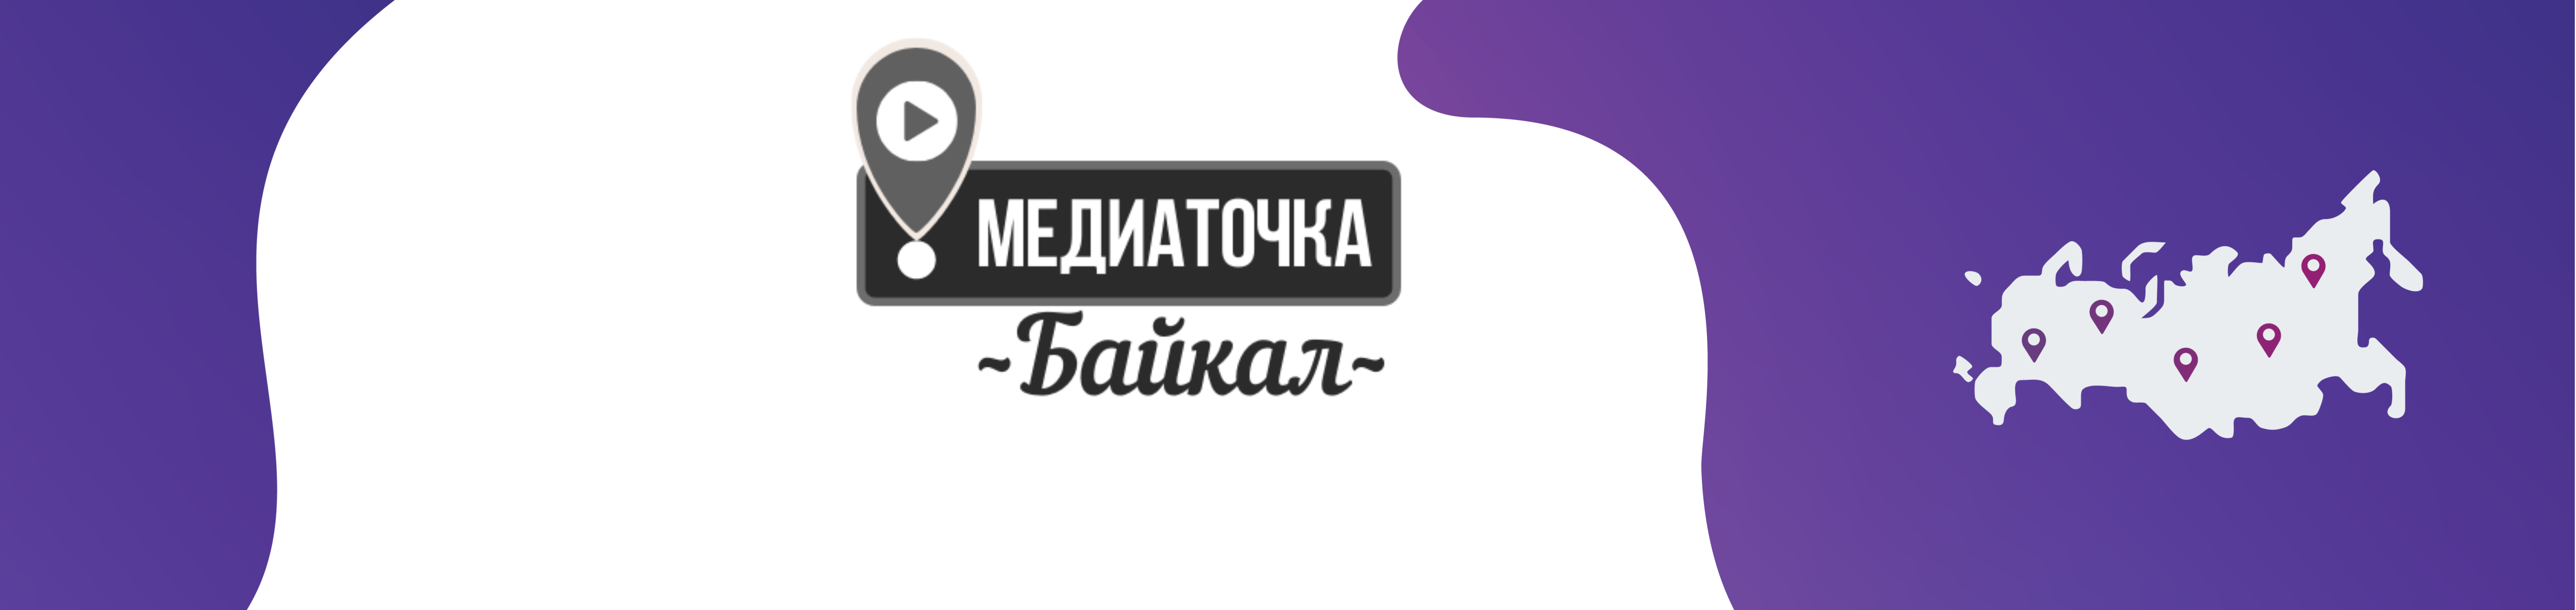 Образовательный Форум «Медиаточка. Байкал»